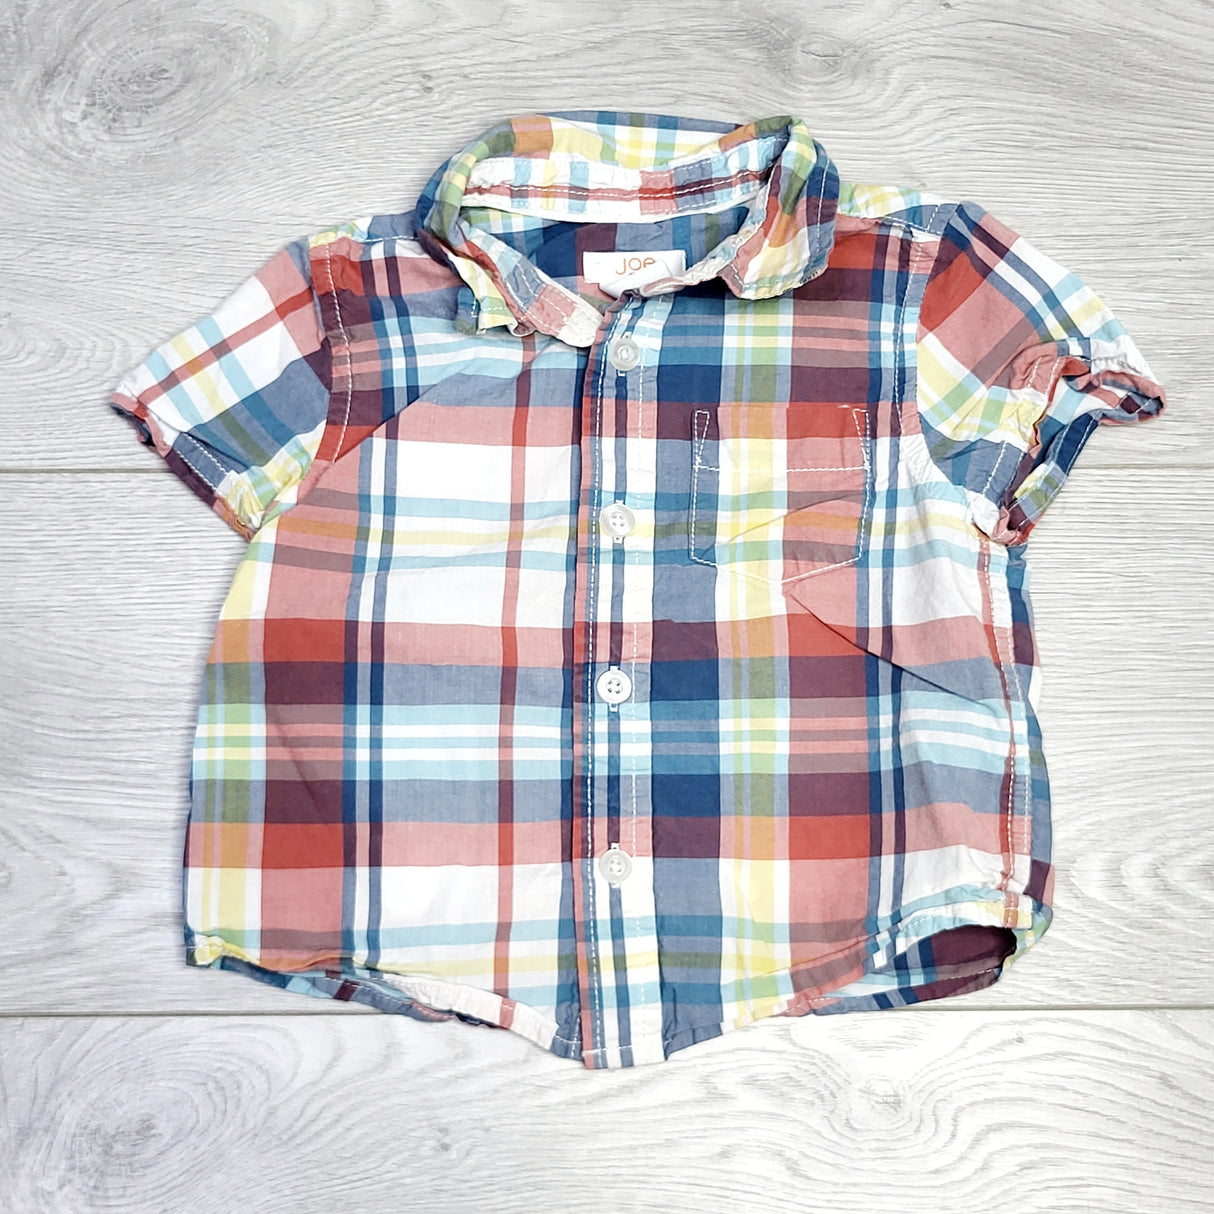 MSNDS1 - Joe Fresh plaid short sleeved button down shirt. Size 12-18 months